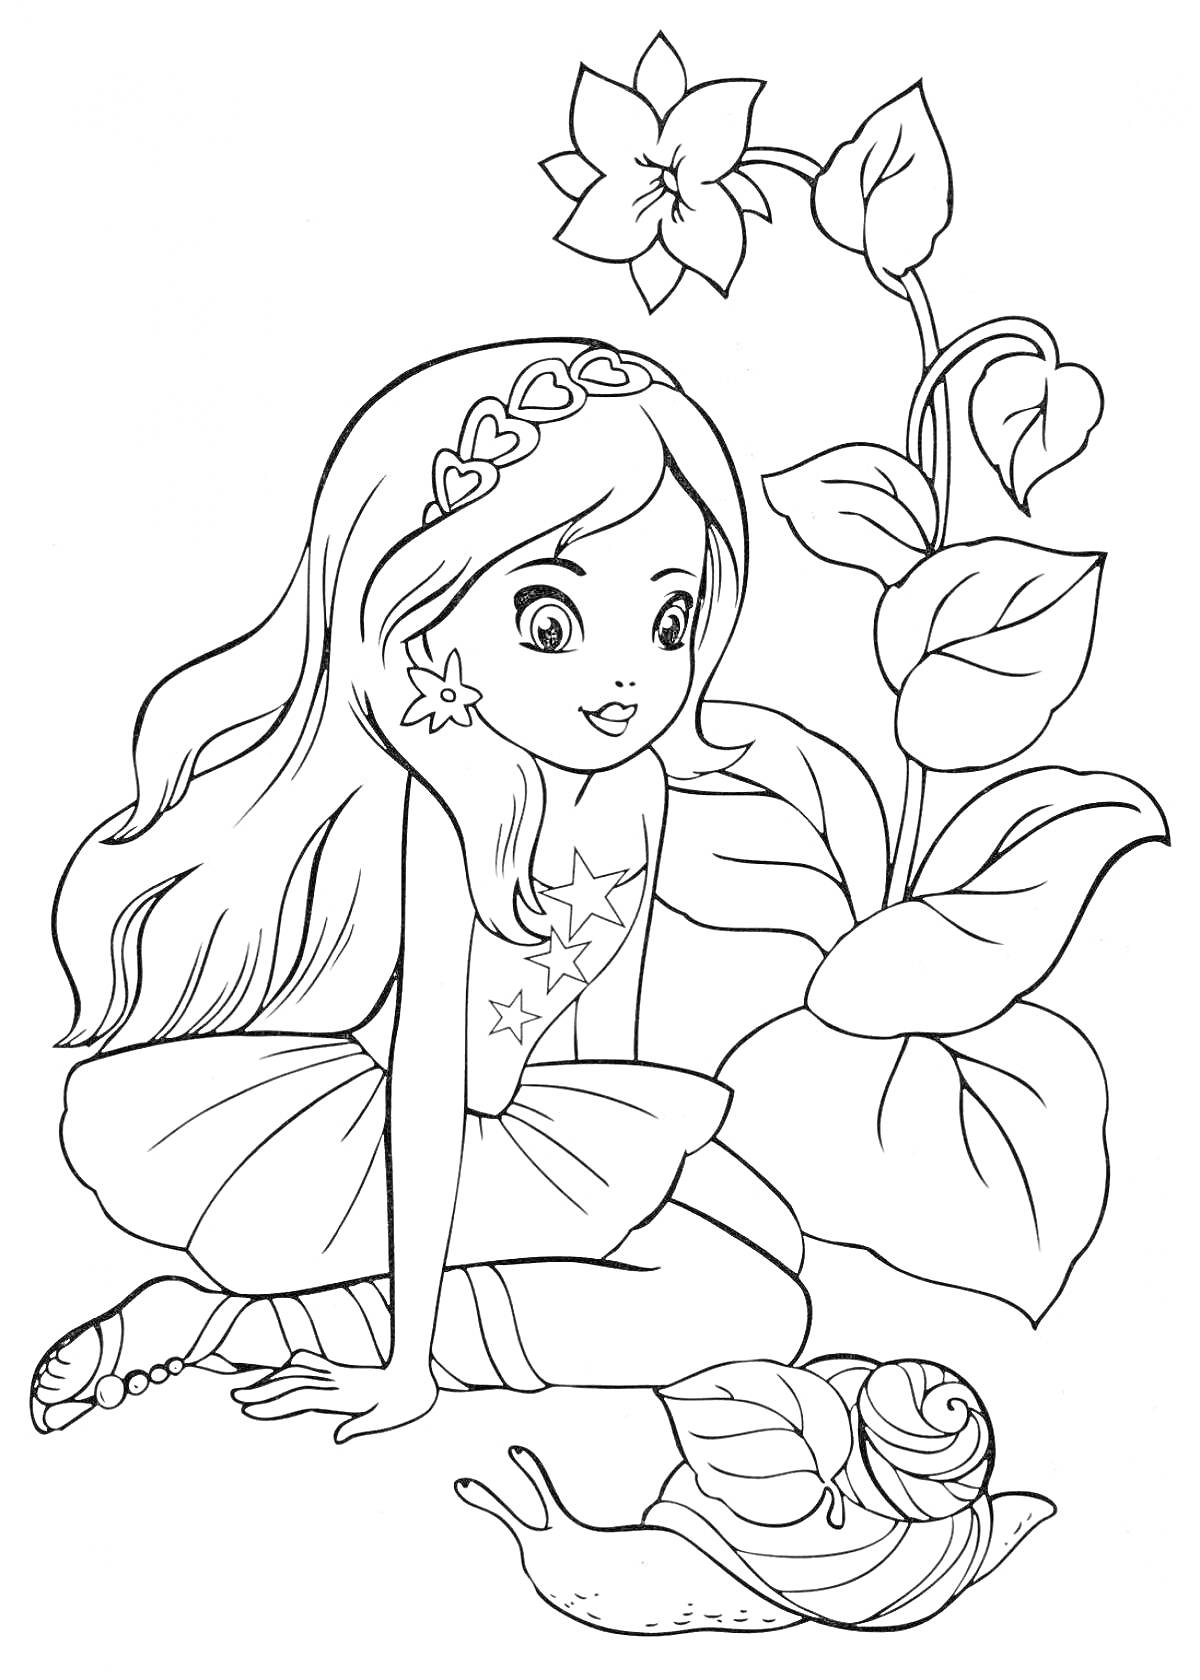 Раскраска Девочка с длинными волосами и цветочным украшением на голове сидит рядом с большим цветком и улиткой.